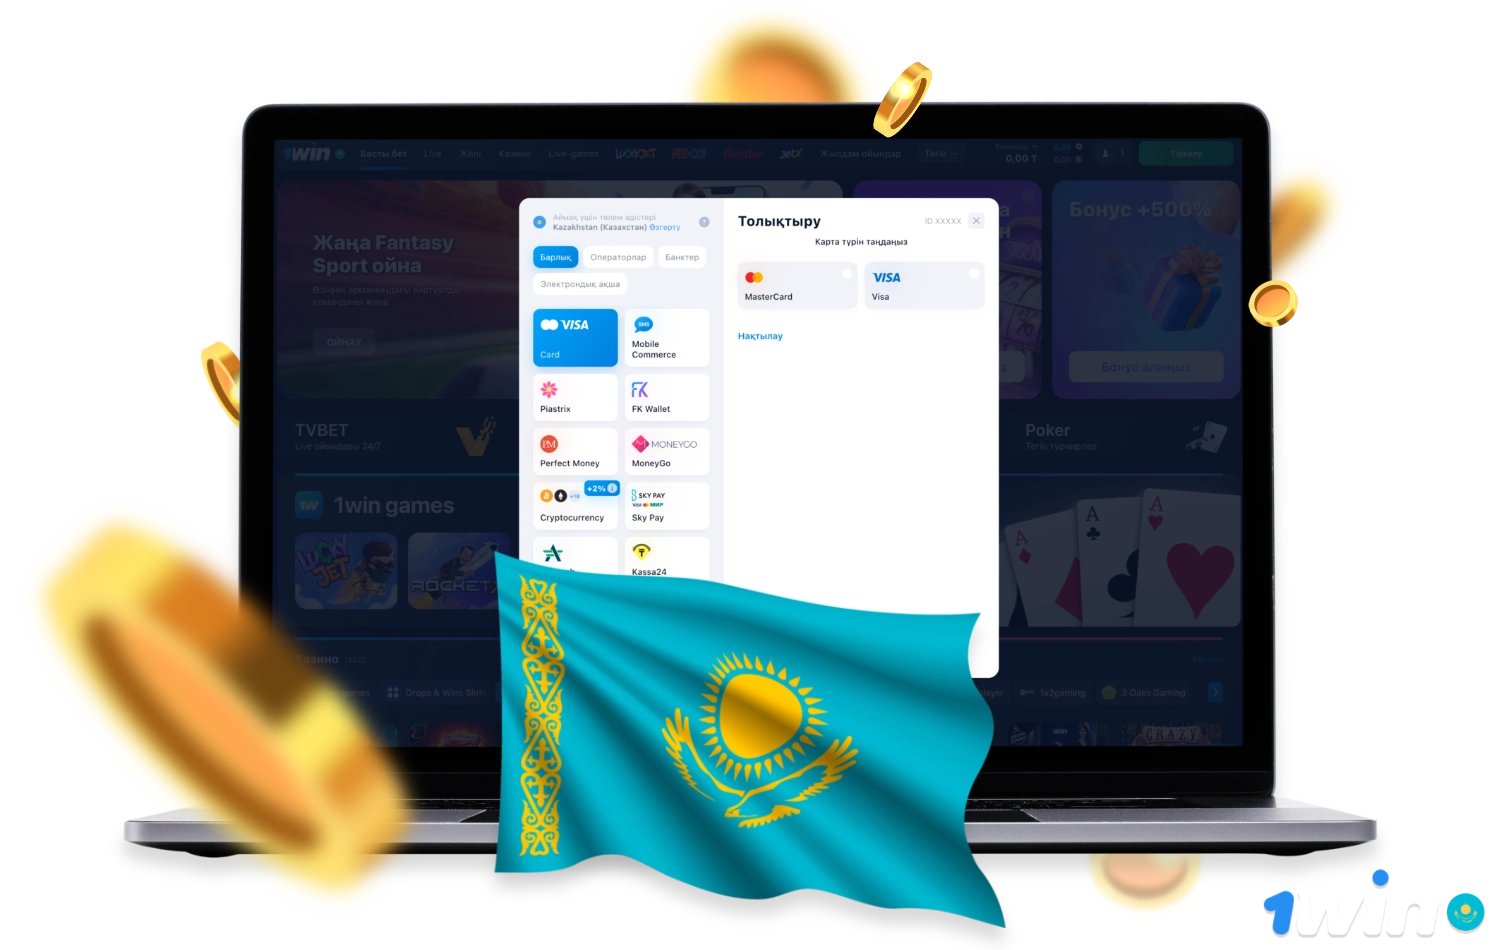 1win в Казахстане предлагает своим пользователям различные варианты оплаты для ввода и вывода денег с платформы